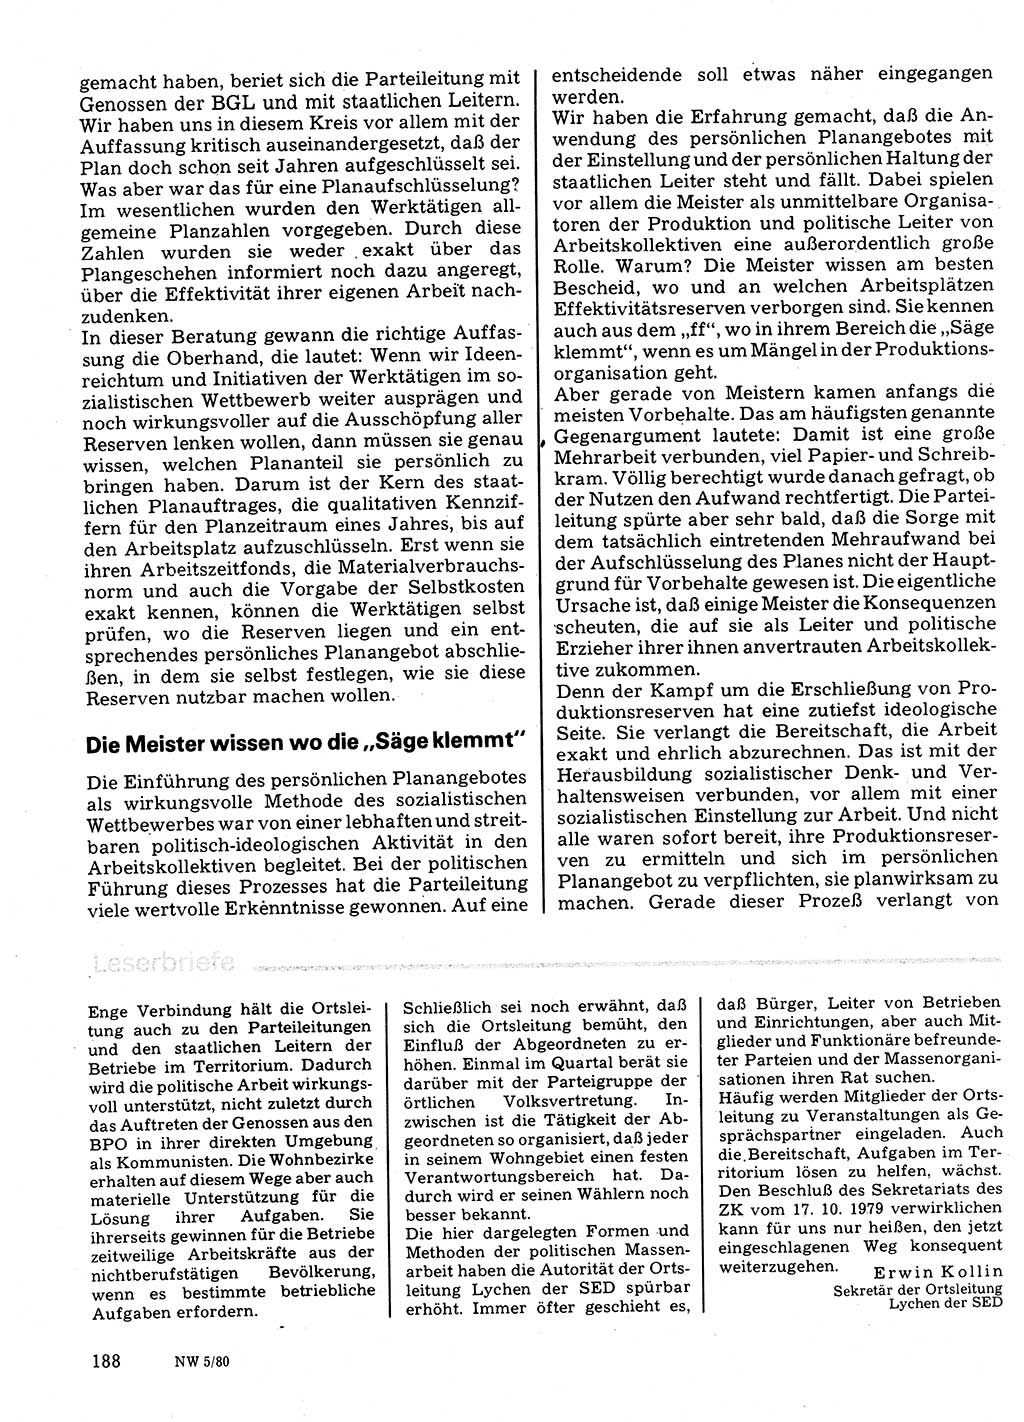 Neuer Weg (NW), Organ des Zentralkomitees (ZK) der SED (Sozialistische Einheitspartei Deutschlands) für Fragen des Parteilebens, 35. Jahrgang [Deutsche Demokratische Republik (DDR)] 1980, Seite 188 (NW ZK SED DDR 1980, S. 188)